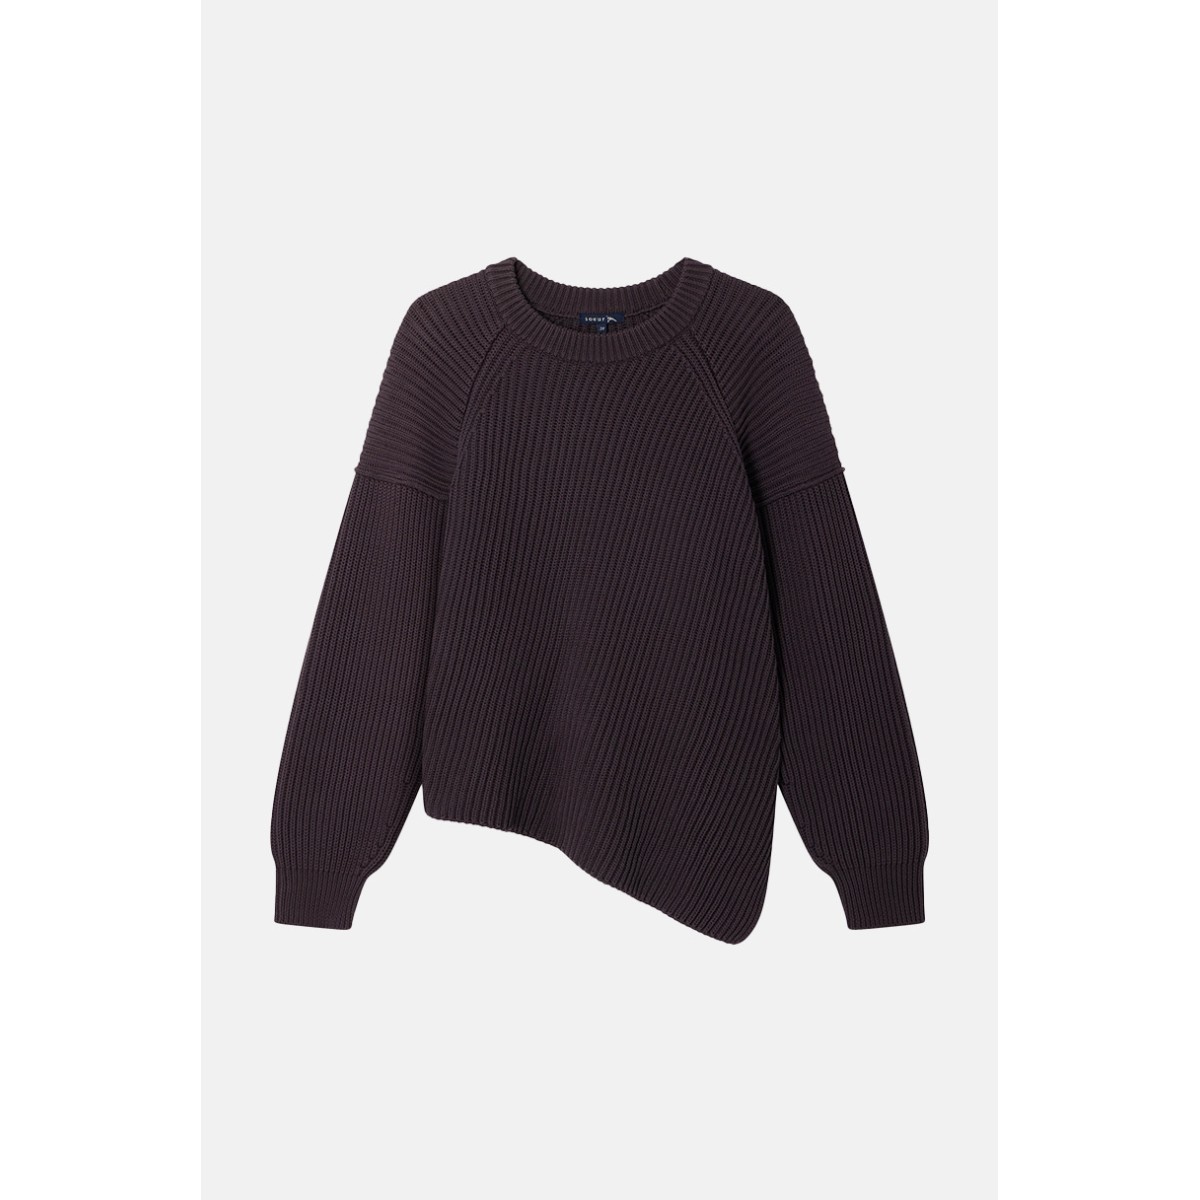 Soeur "Arco" sweater